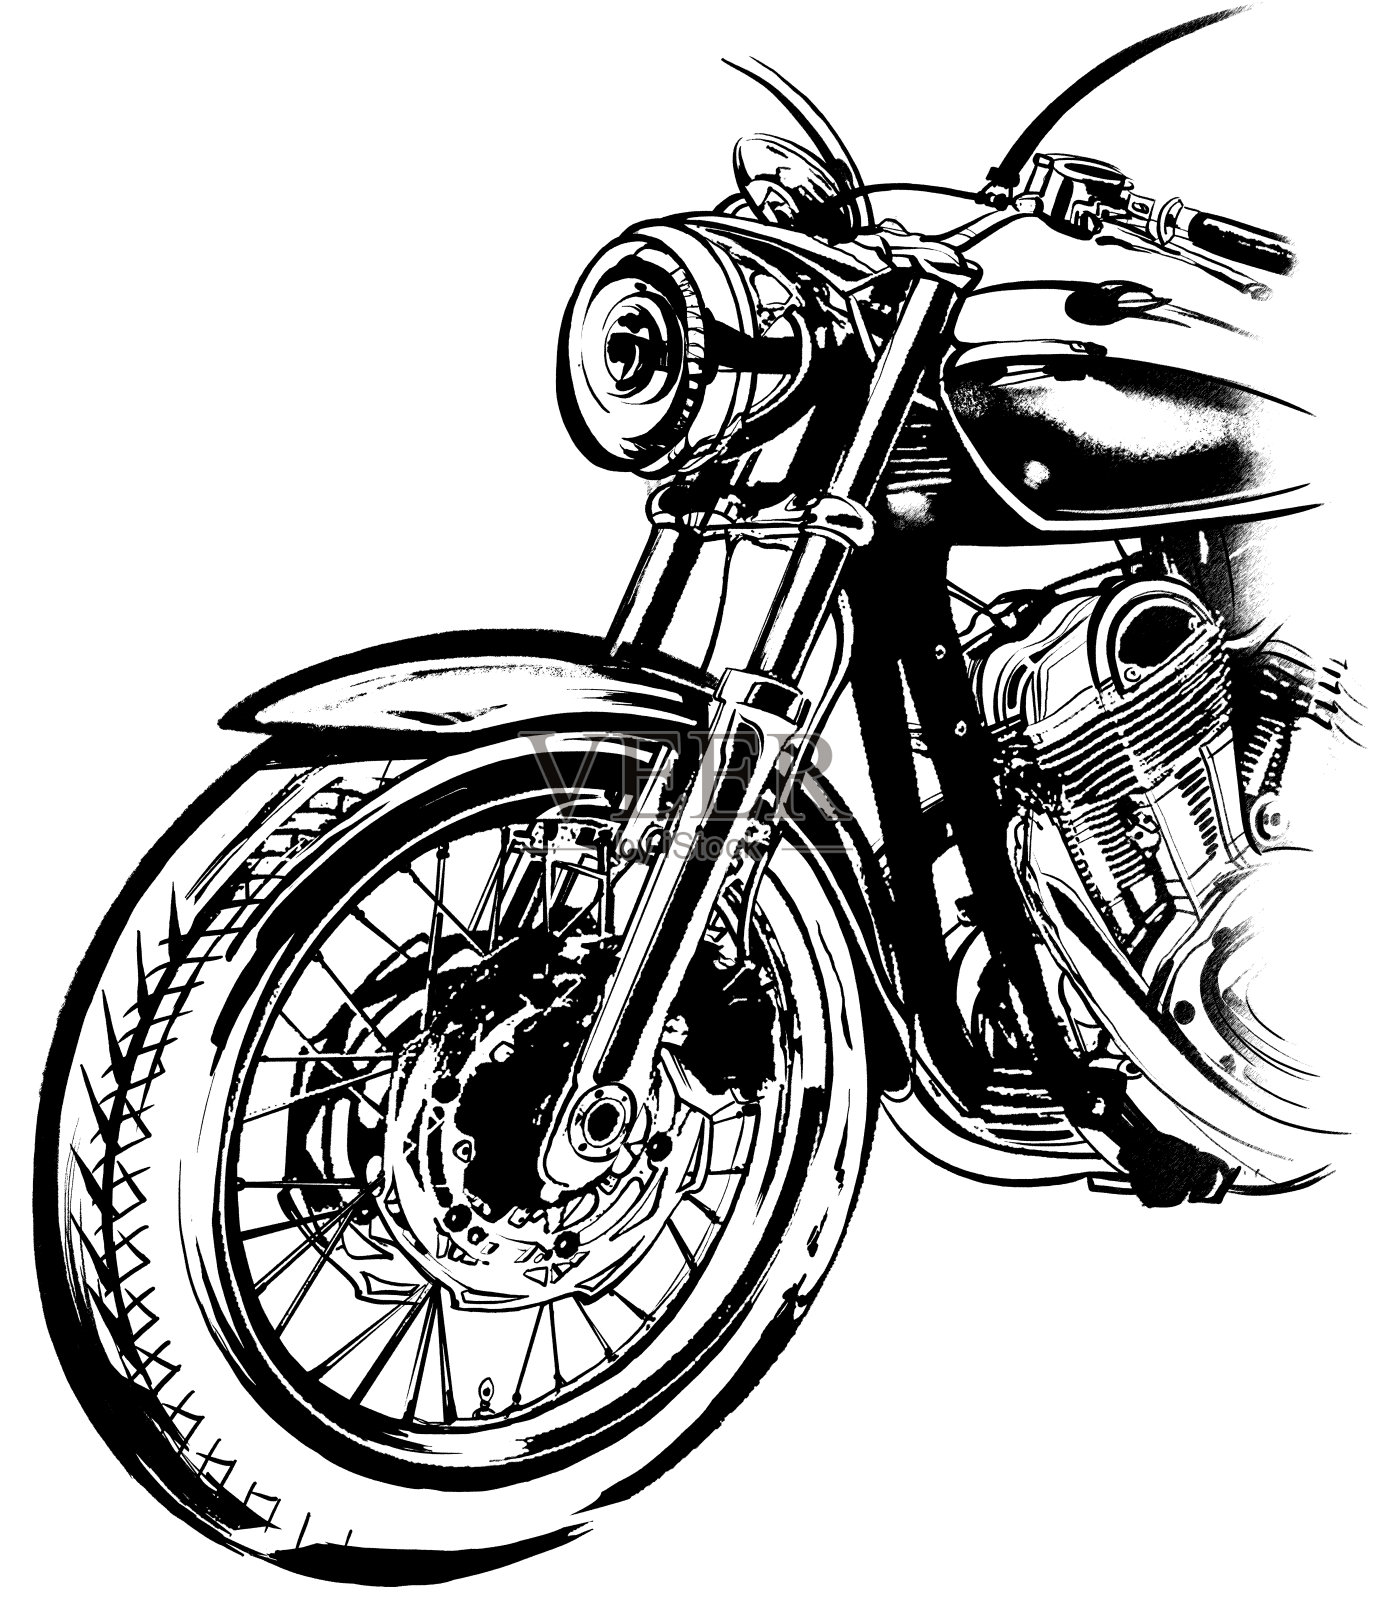 摩托车，自行车，垃圾摇滚风格的手绘设计元素图片